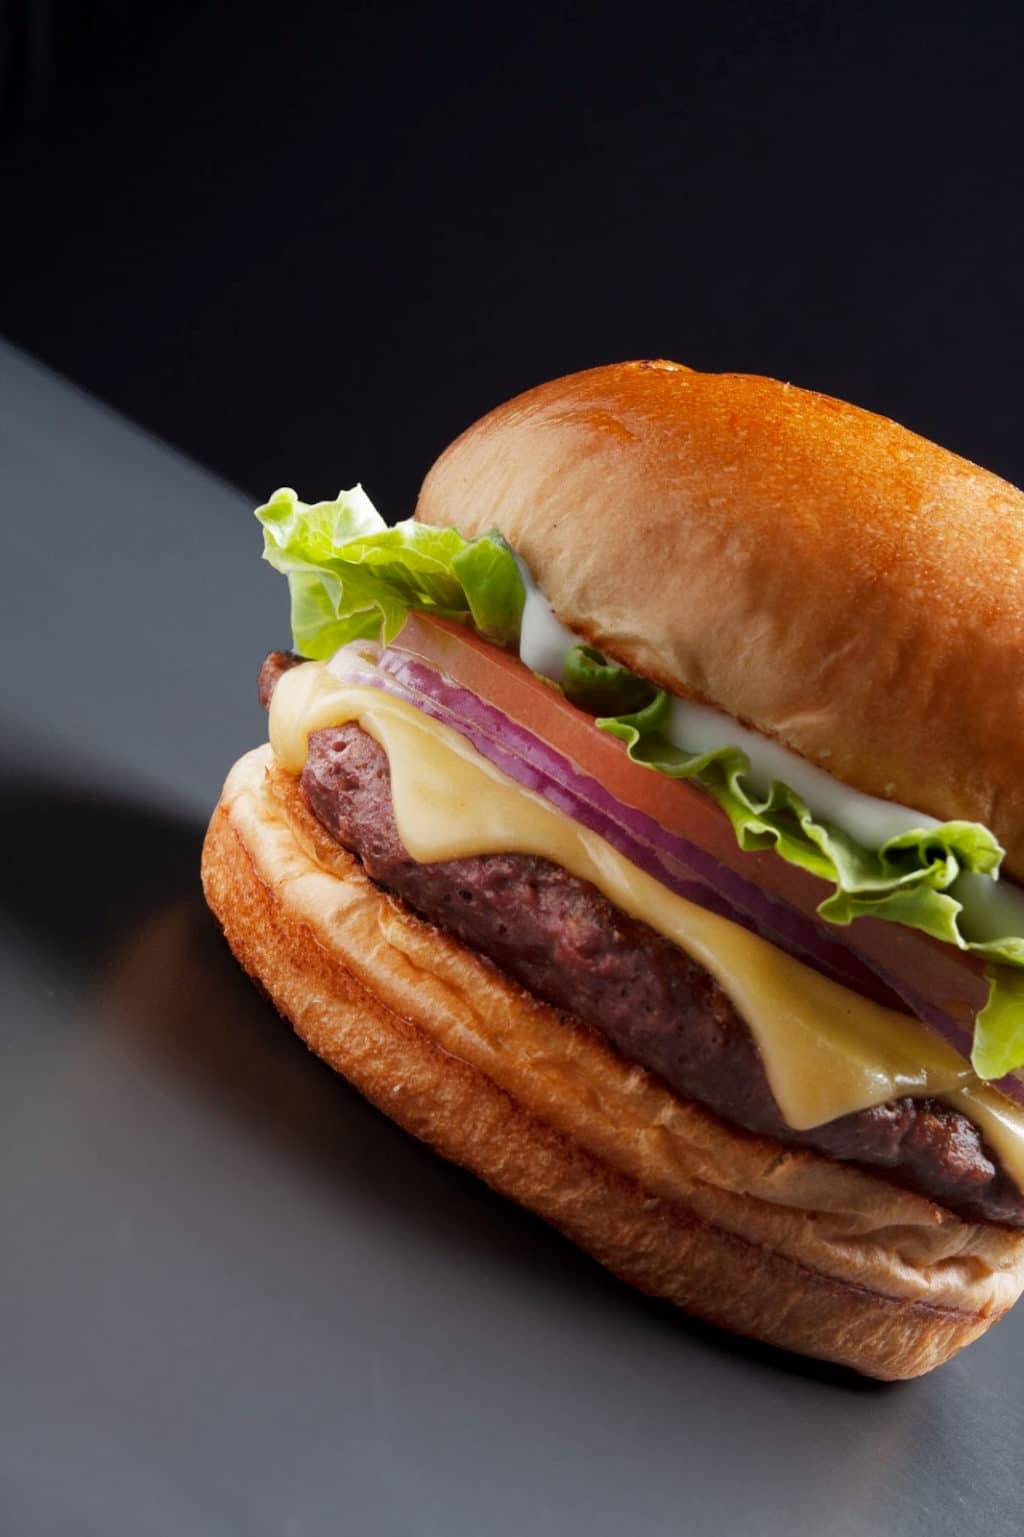 Burger King lança combo Free Fire e amplia presença no universo